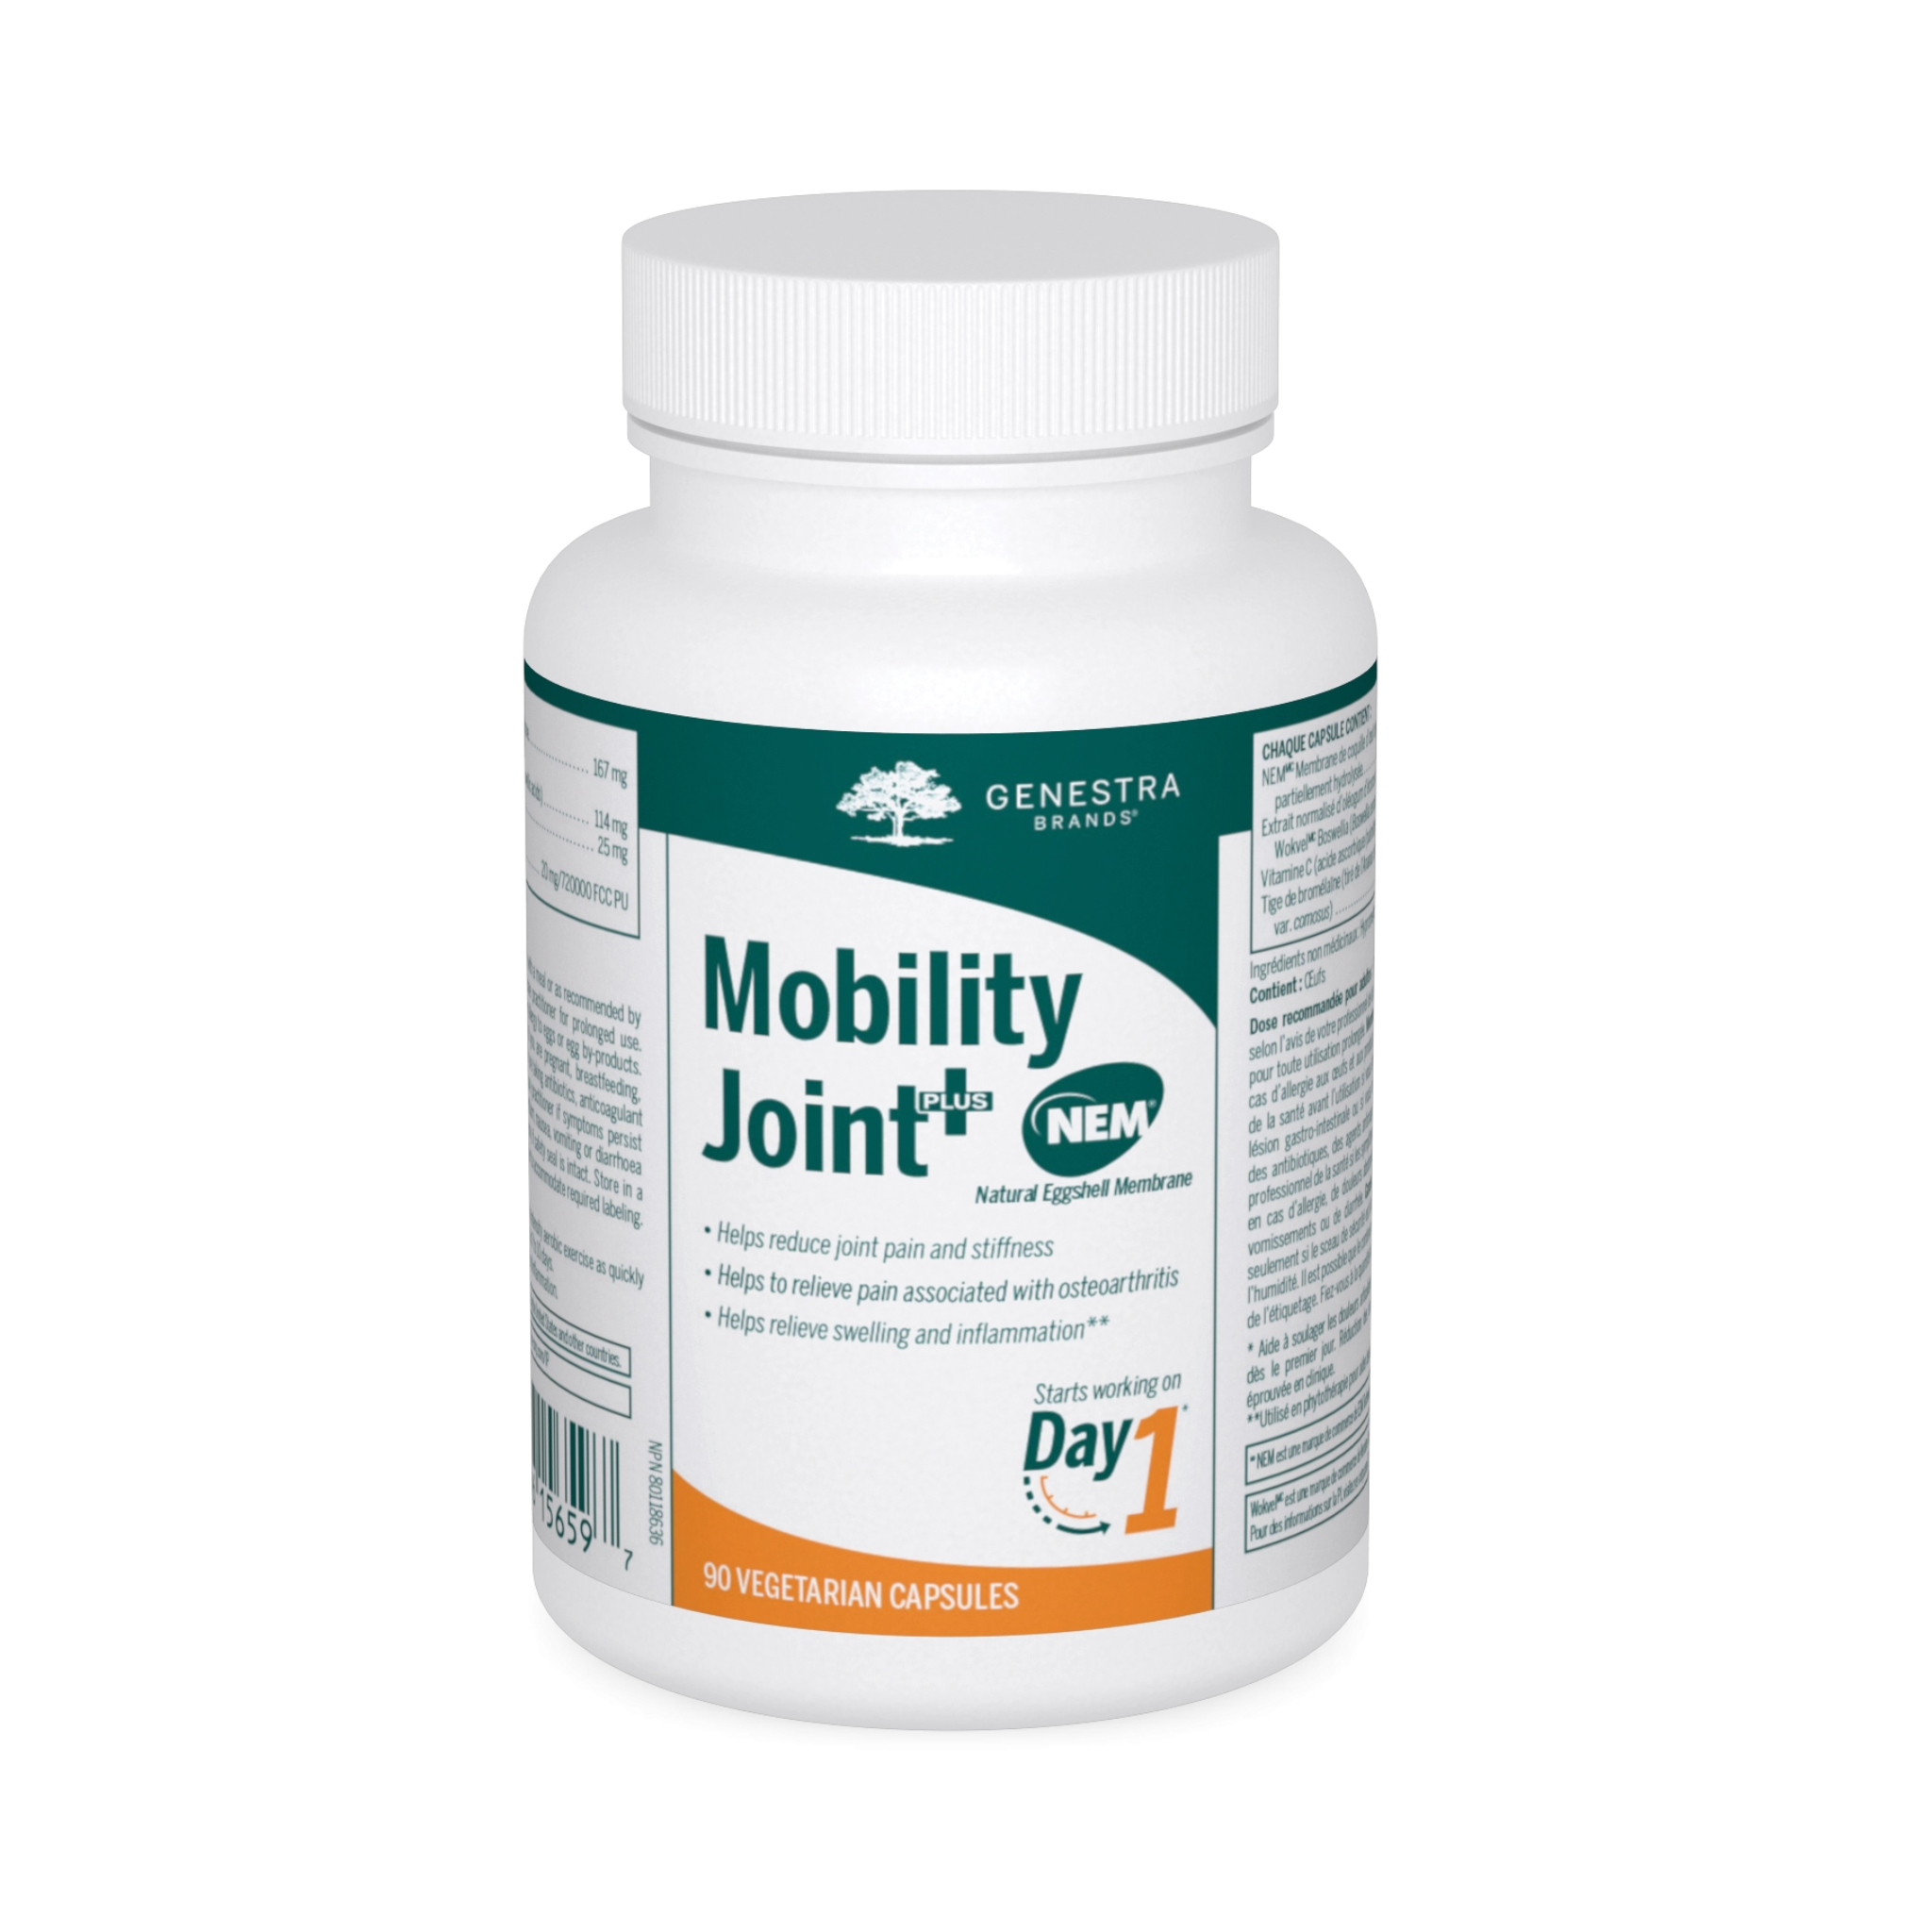 Genestra Mobility Joint Plus NEM